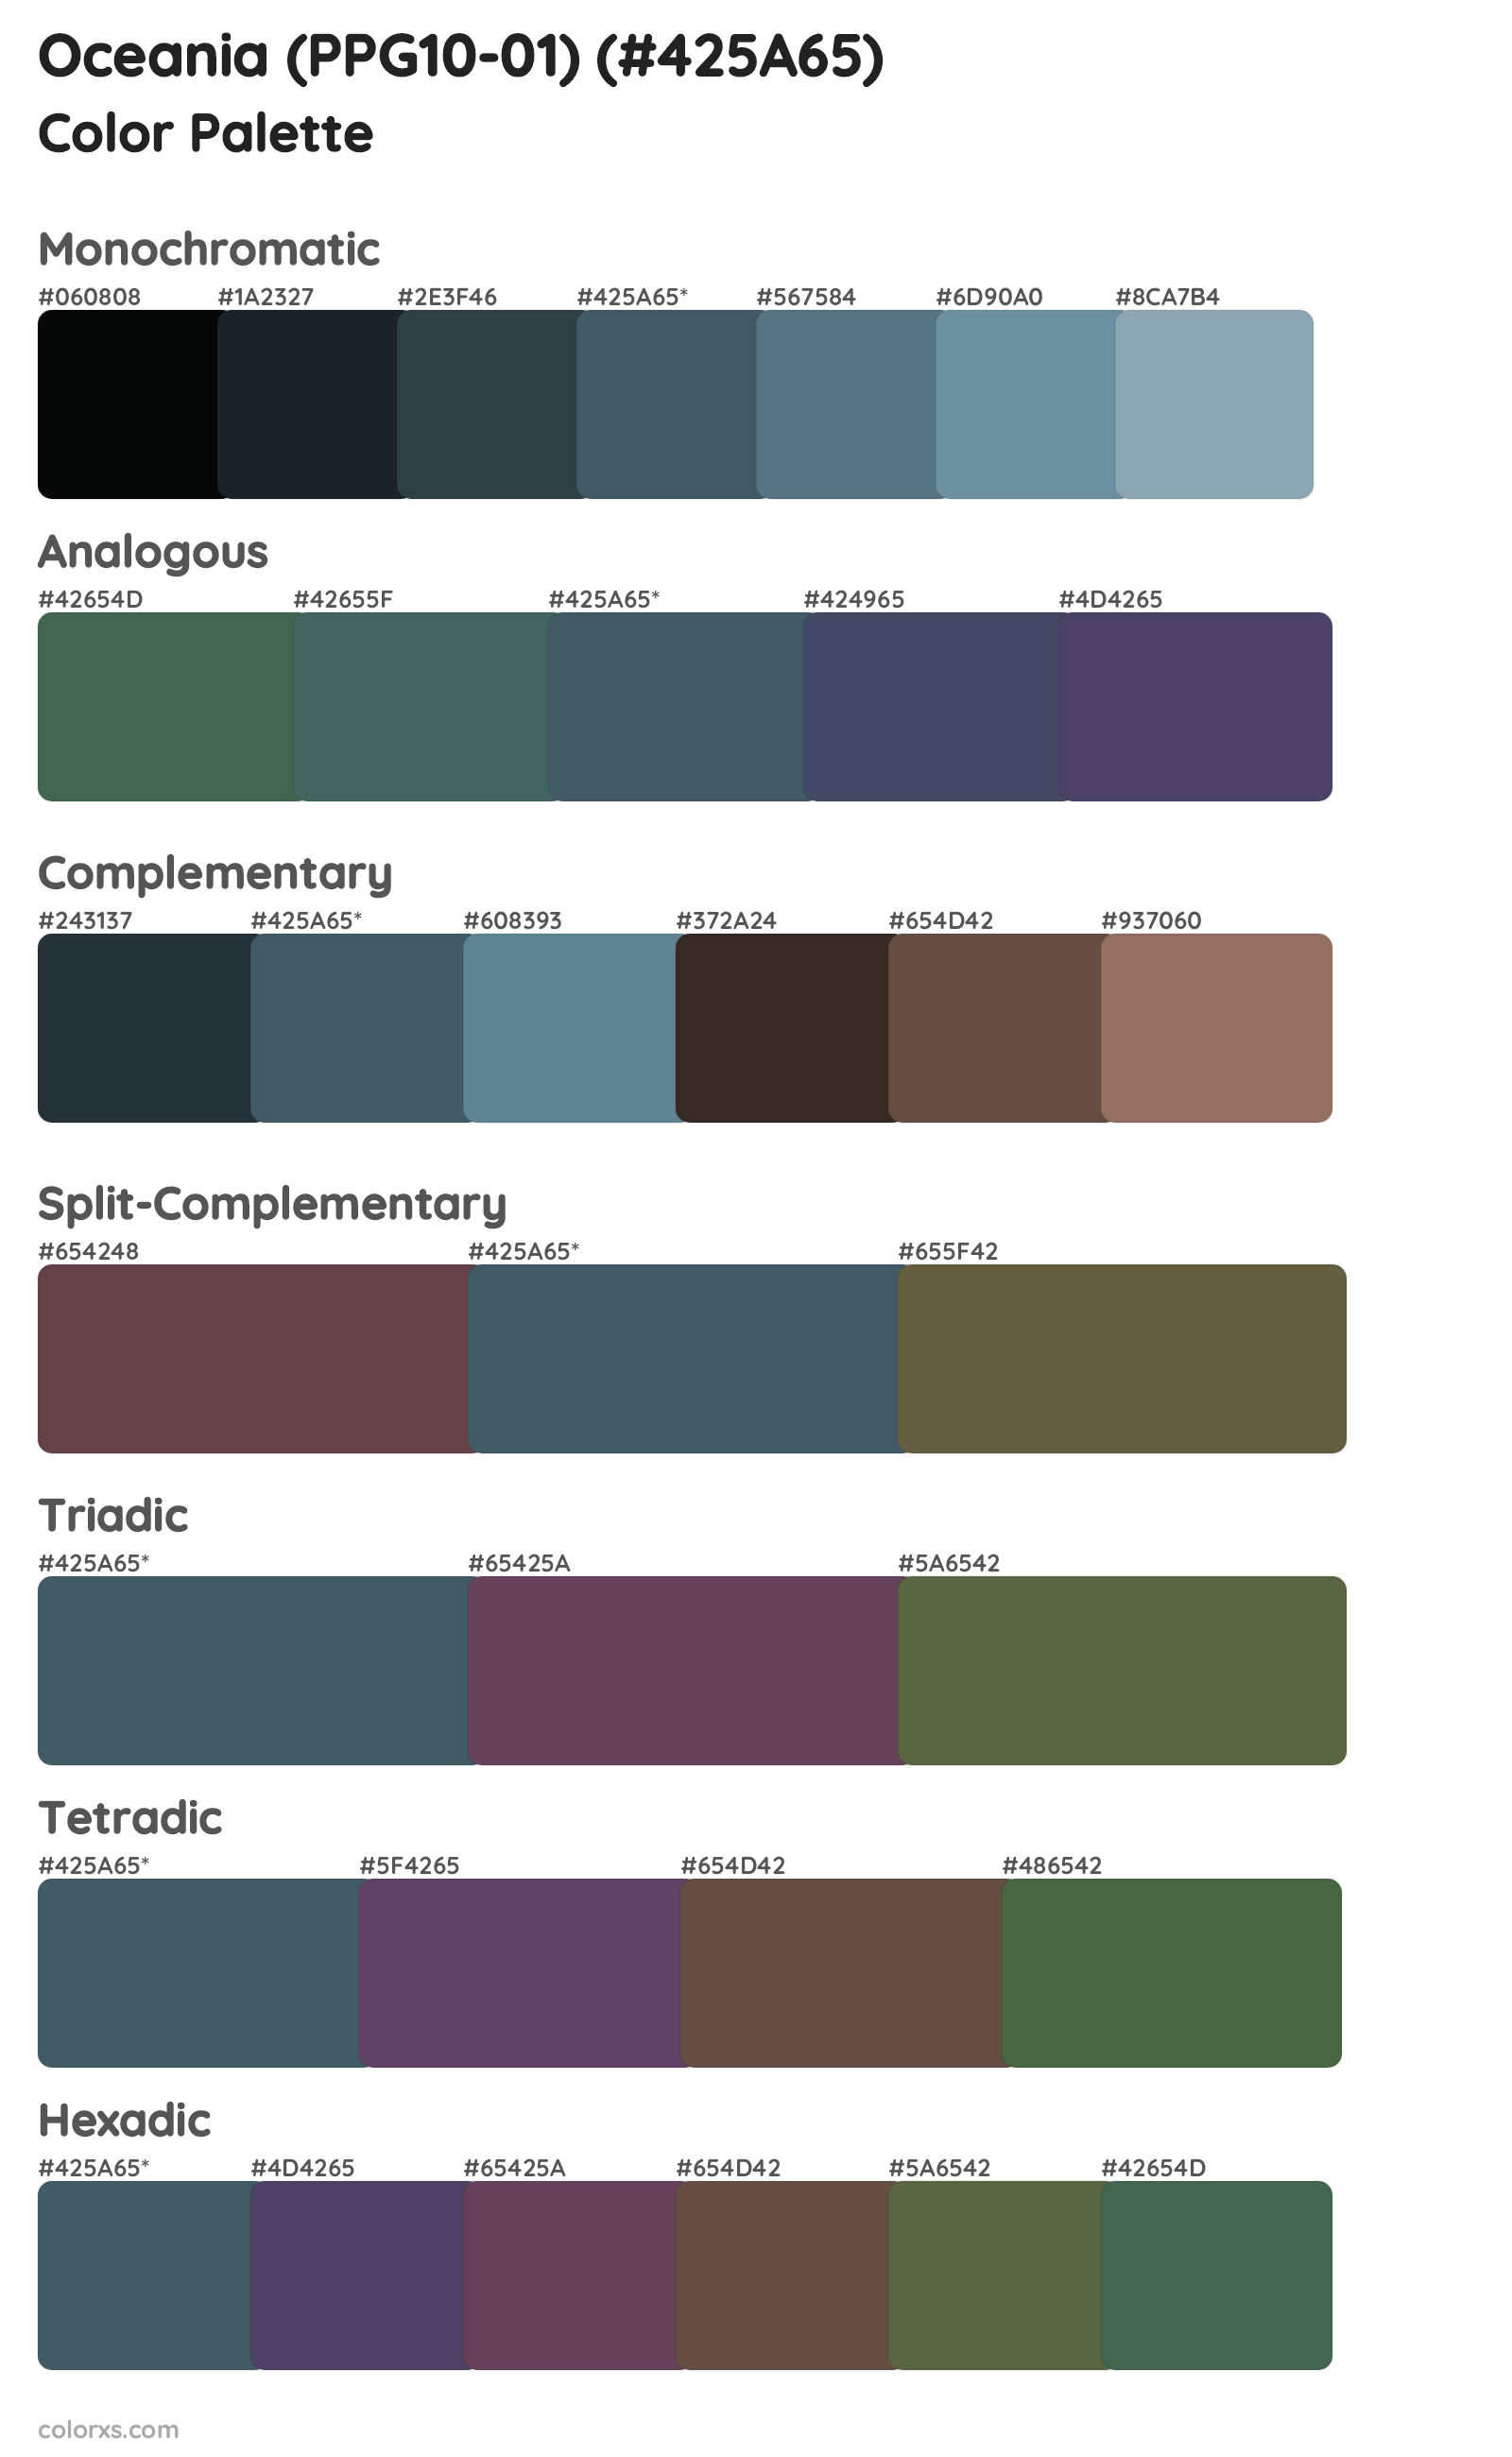 Oceania (PPG10-01) Color Scheme Palettes